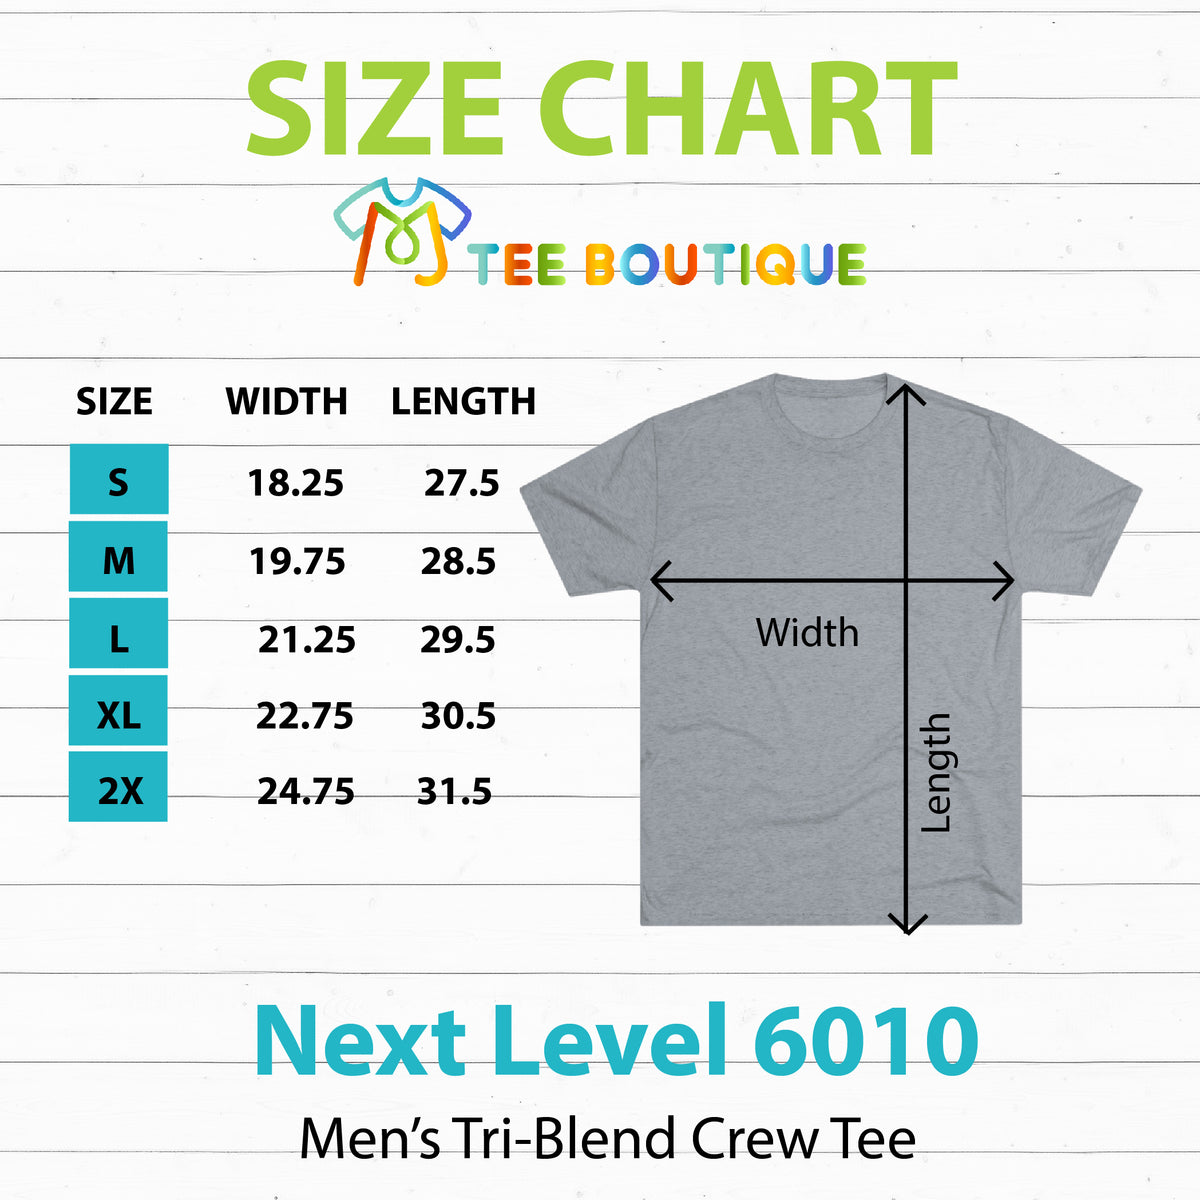 Nature Vs Nurture Funny Psychology Shirt | Psychologist College Gift | Men's  Tri-blend T-shirt